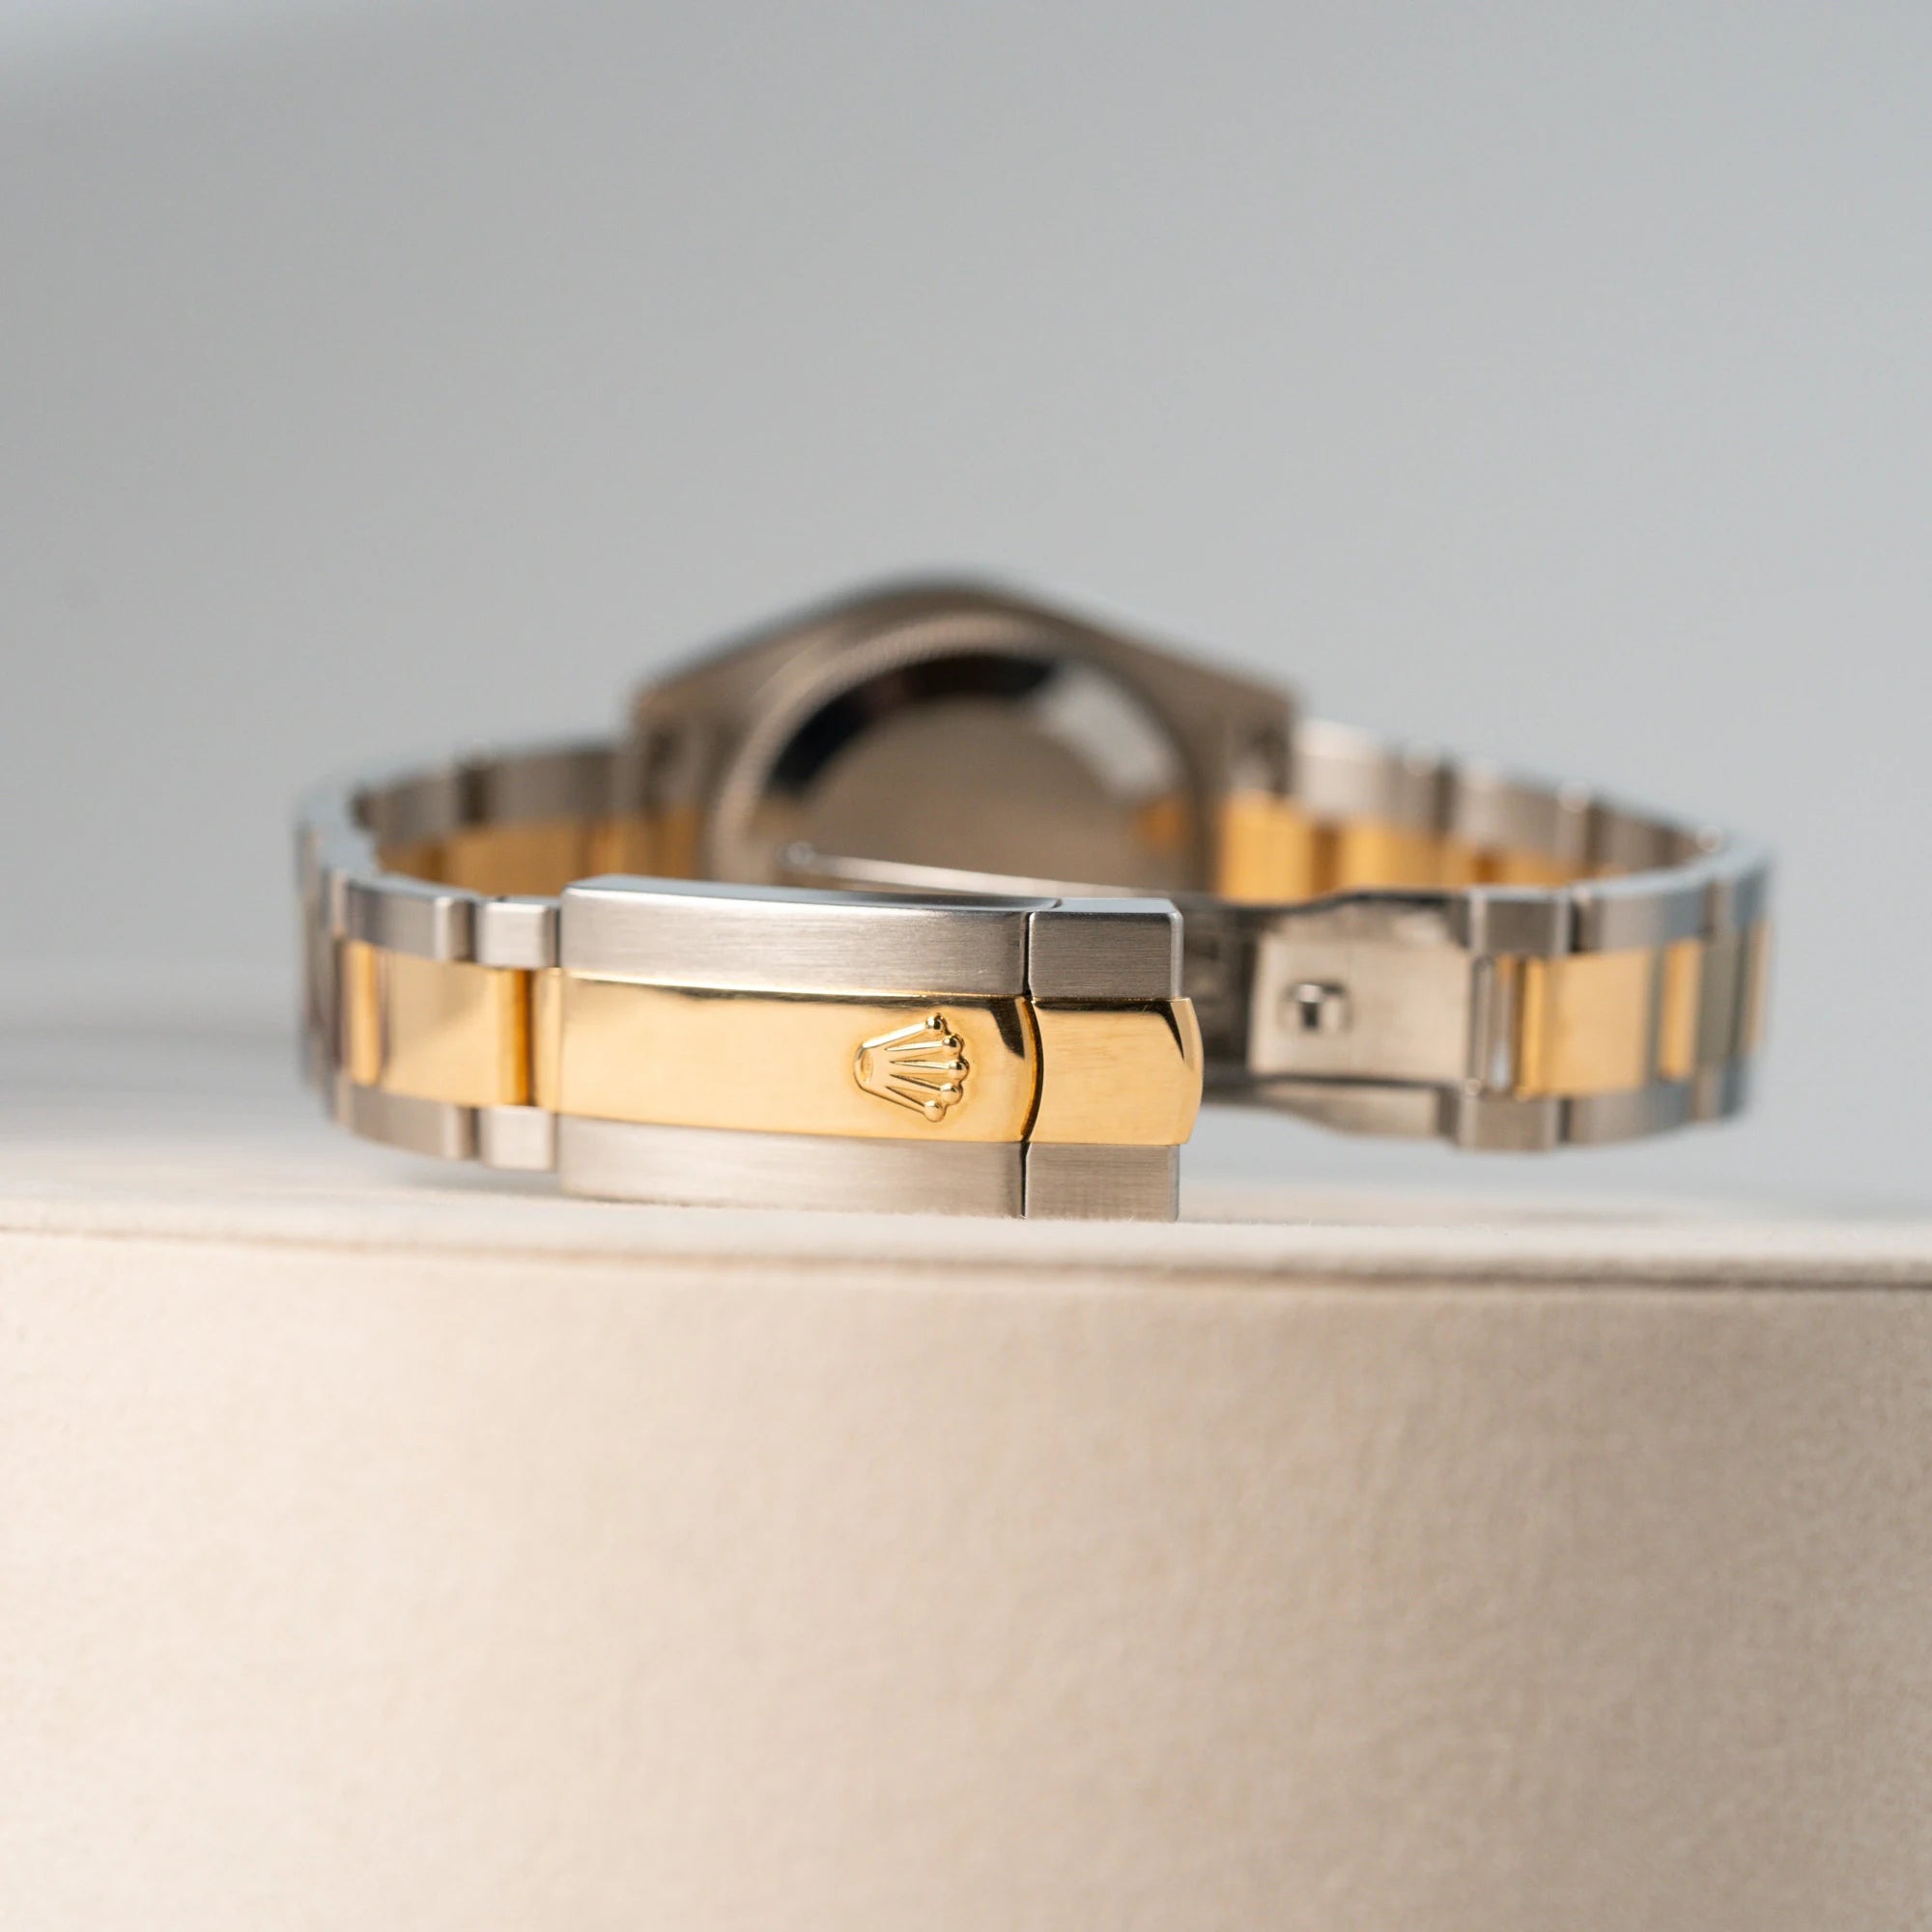 Detailaufnahme der Faltschliesse der Rolex Datejust 31 mm in Stahl-Gold für Ladies mit einem oliven Zifferblatt und einem diamantbesetzten Index